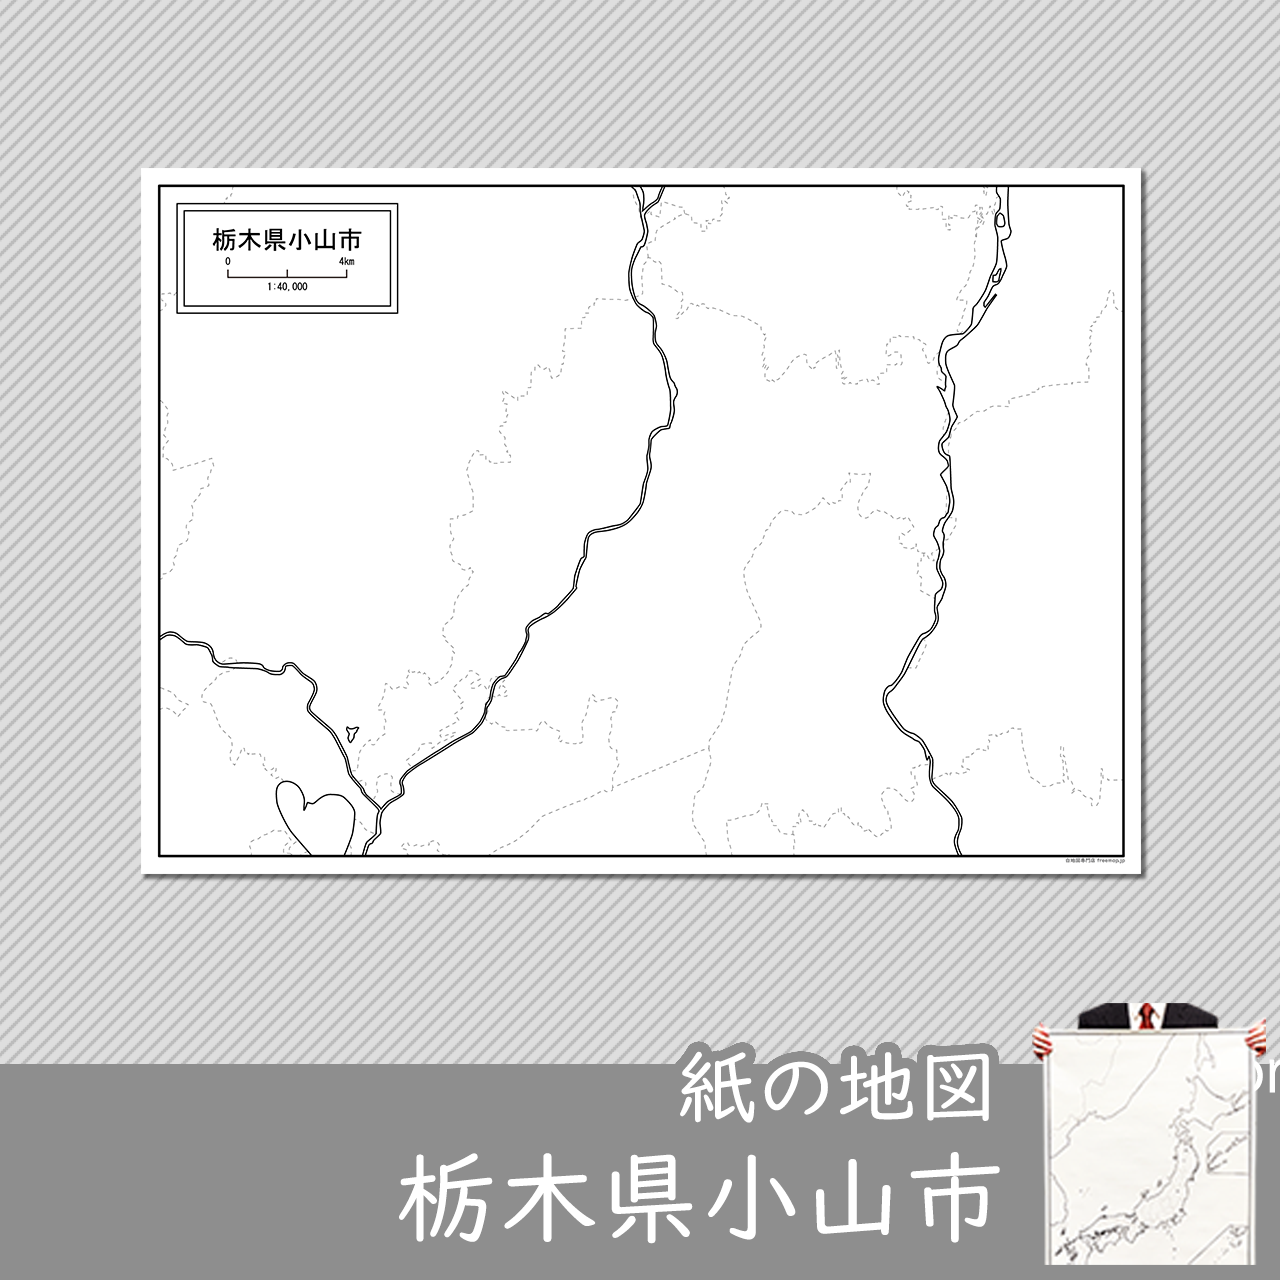 小山市の紙の白地図のサムネイル